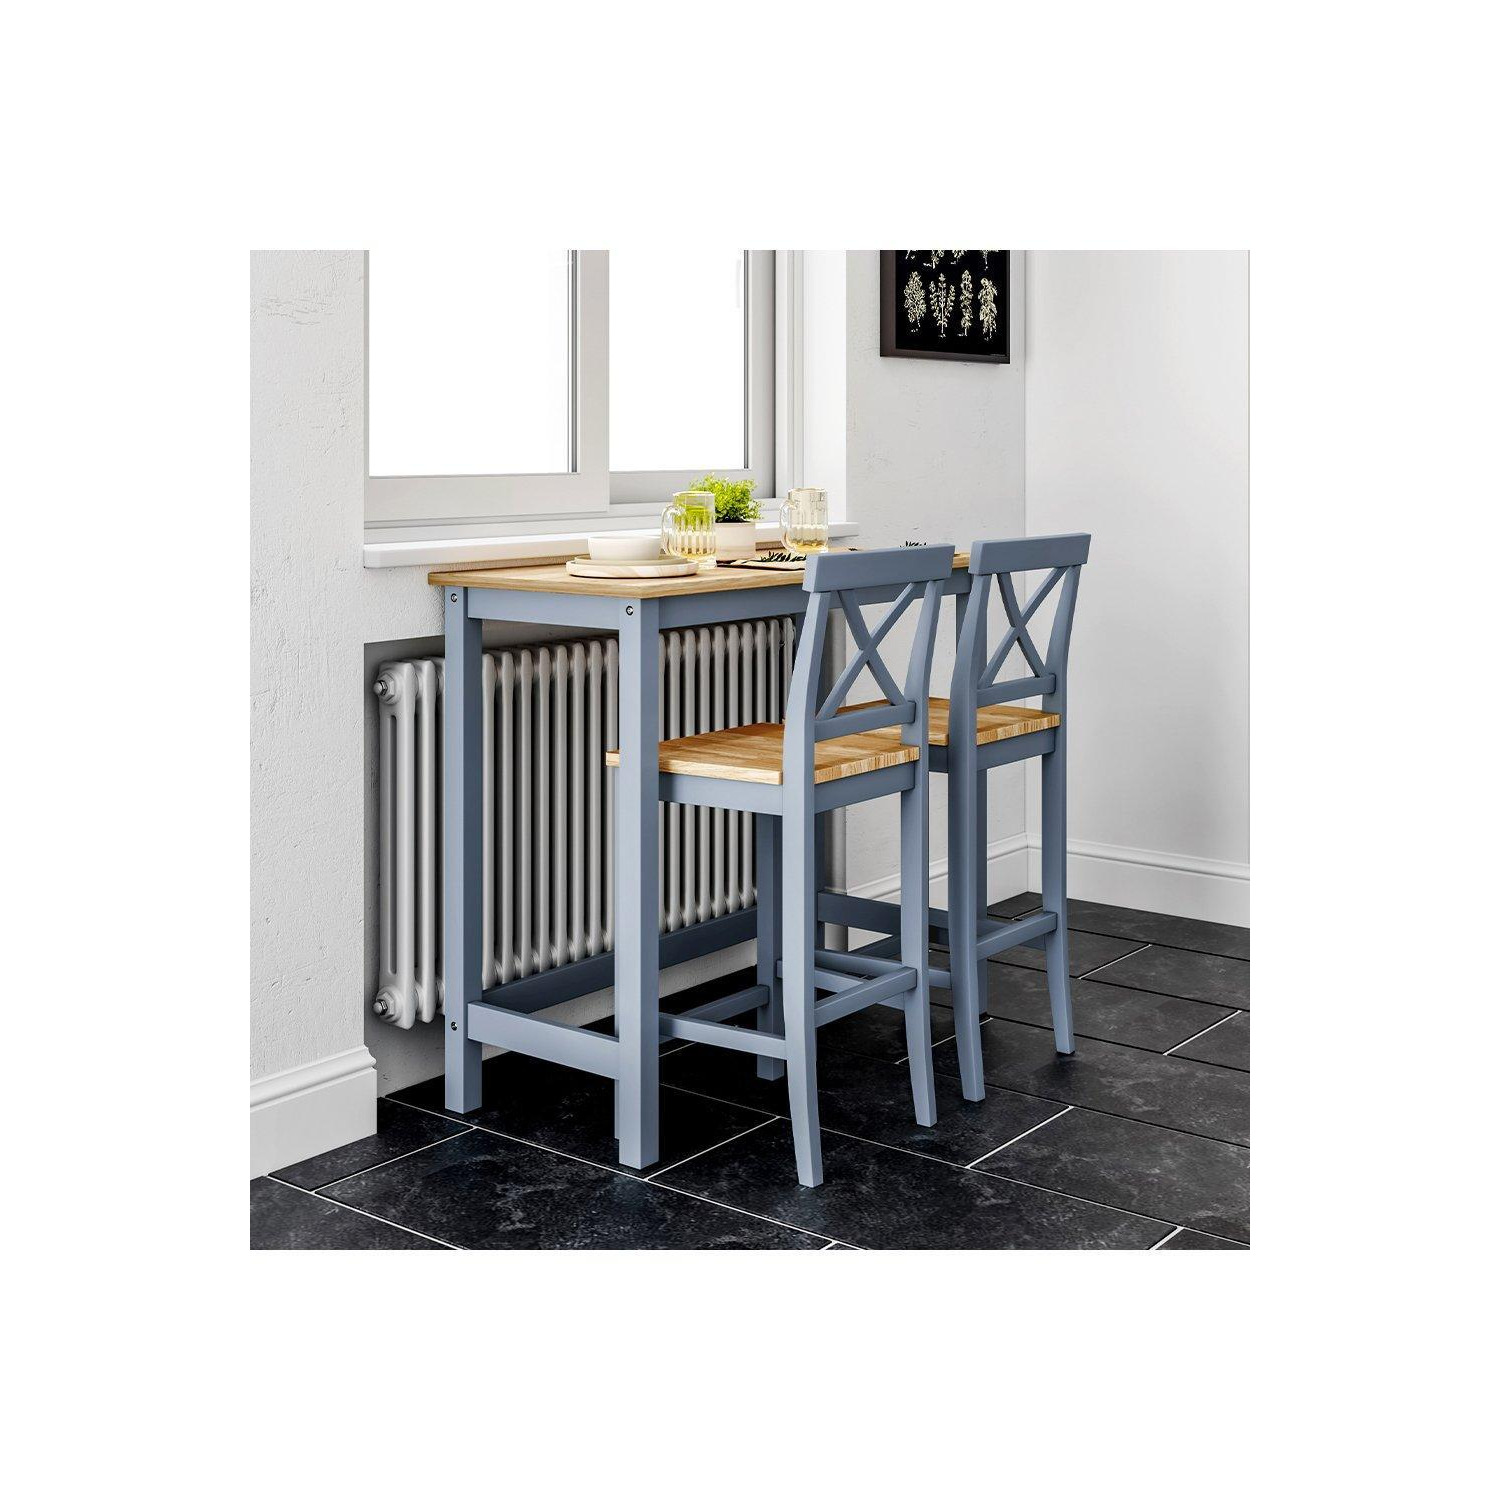 3Pcs Grey Wooden High Bar Table and Stools Set - image 1